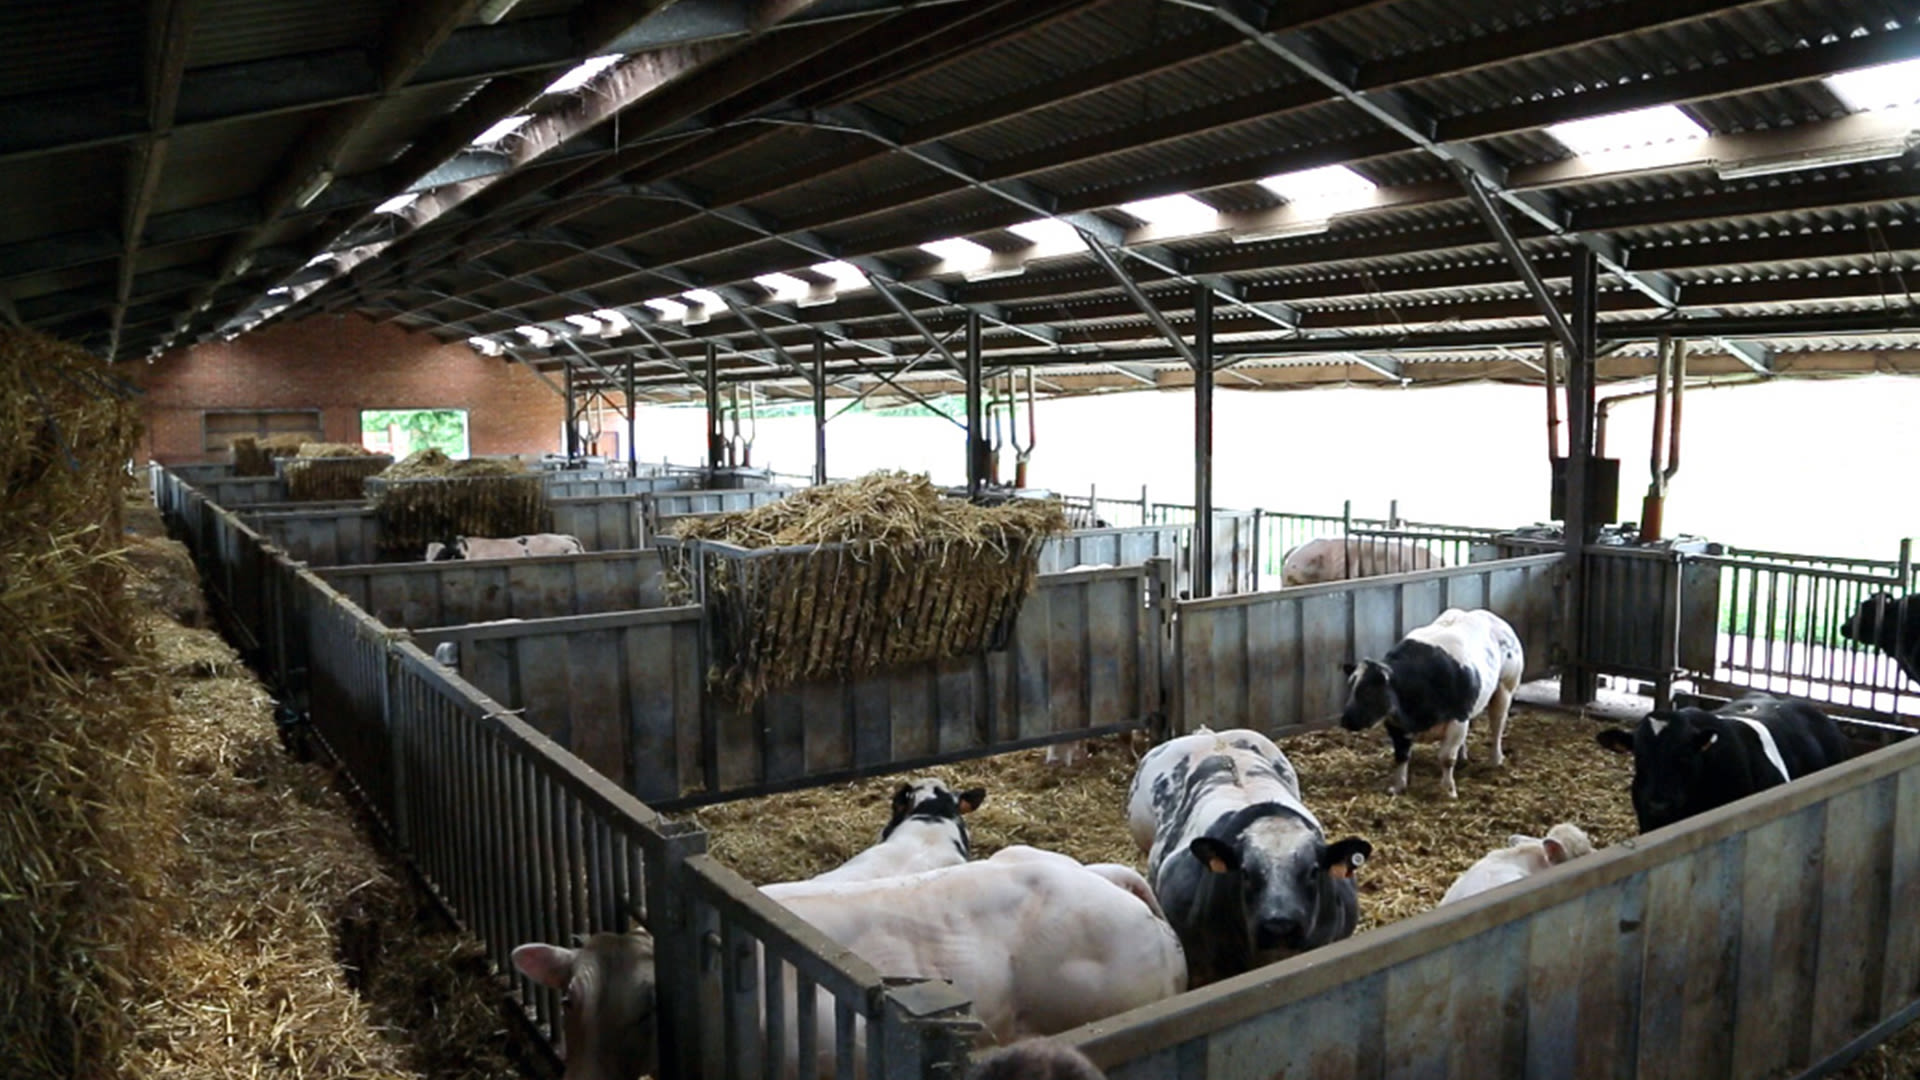 koeien in de stal hooi proefstation